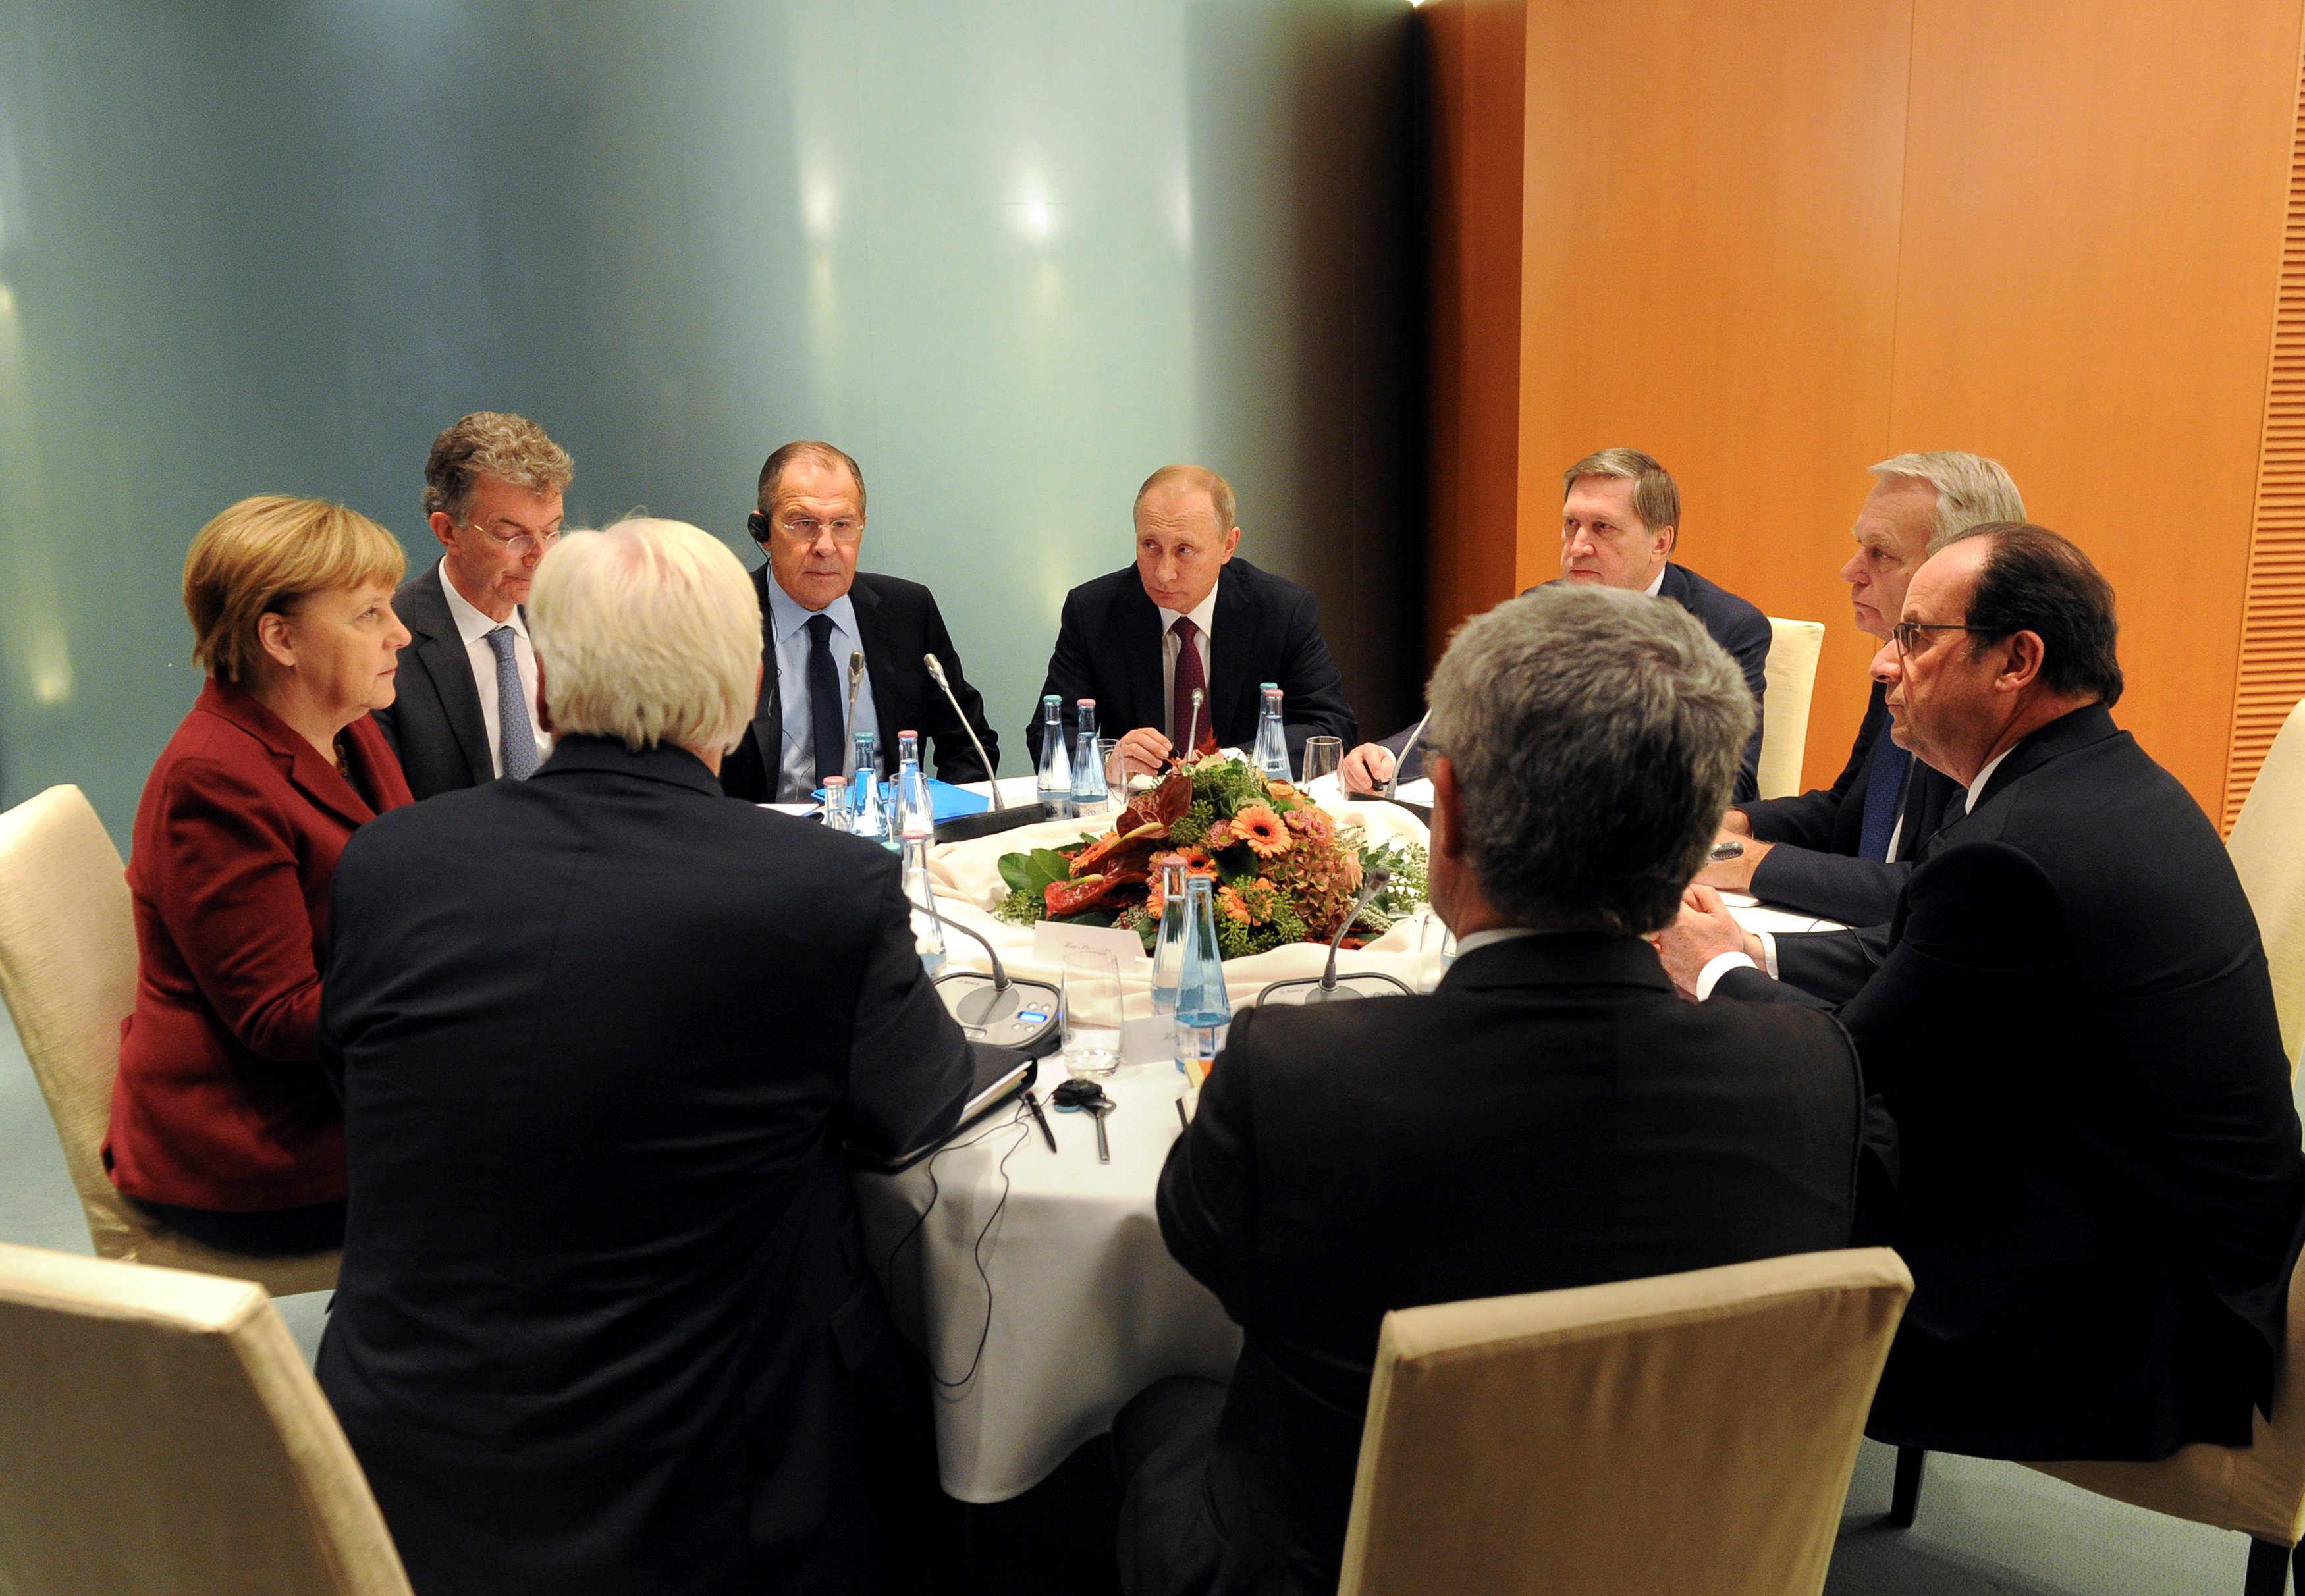 Δύσκολες οι συζητήσεις με τη Μόσχα για Συρία και Ουκρανία, λέει η Μέρκελ